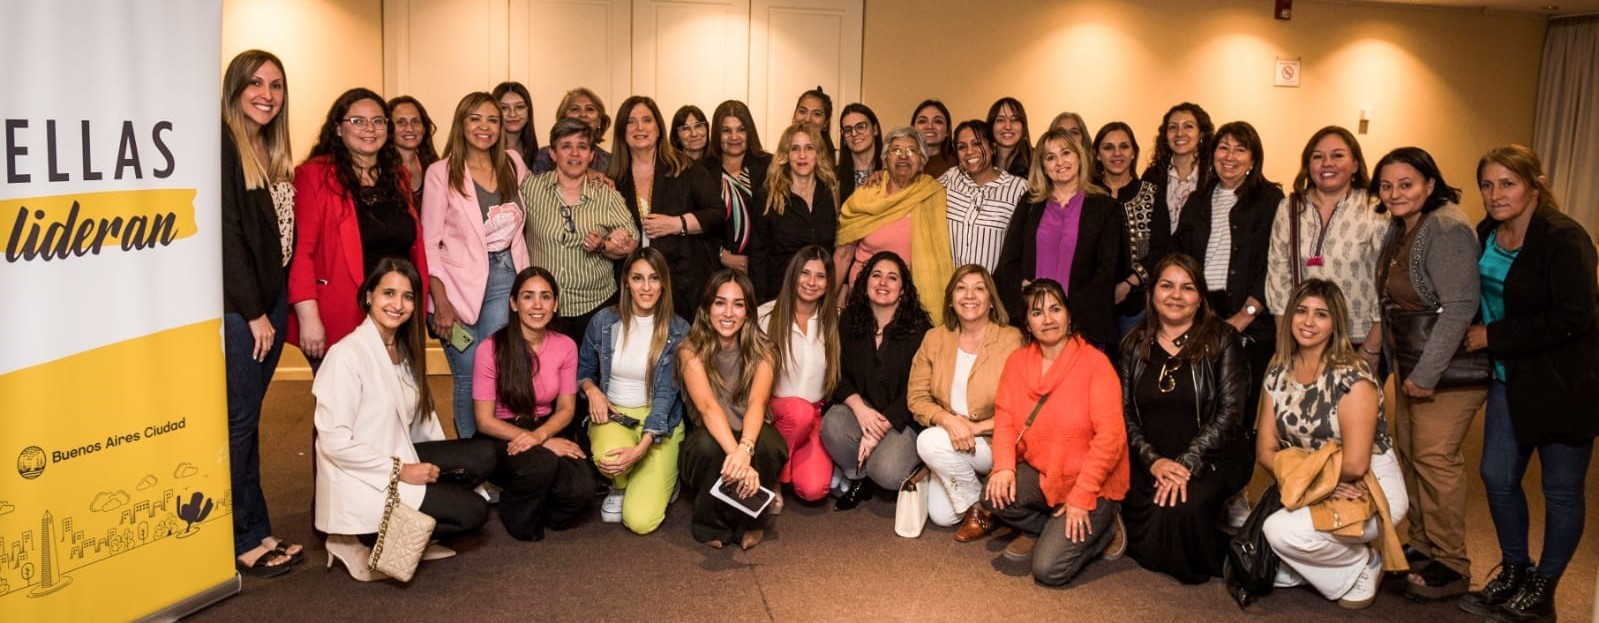 Foro Federal Ellas Lideran: La cumbre que reunirá a mujeres líderes en la Ciudad